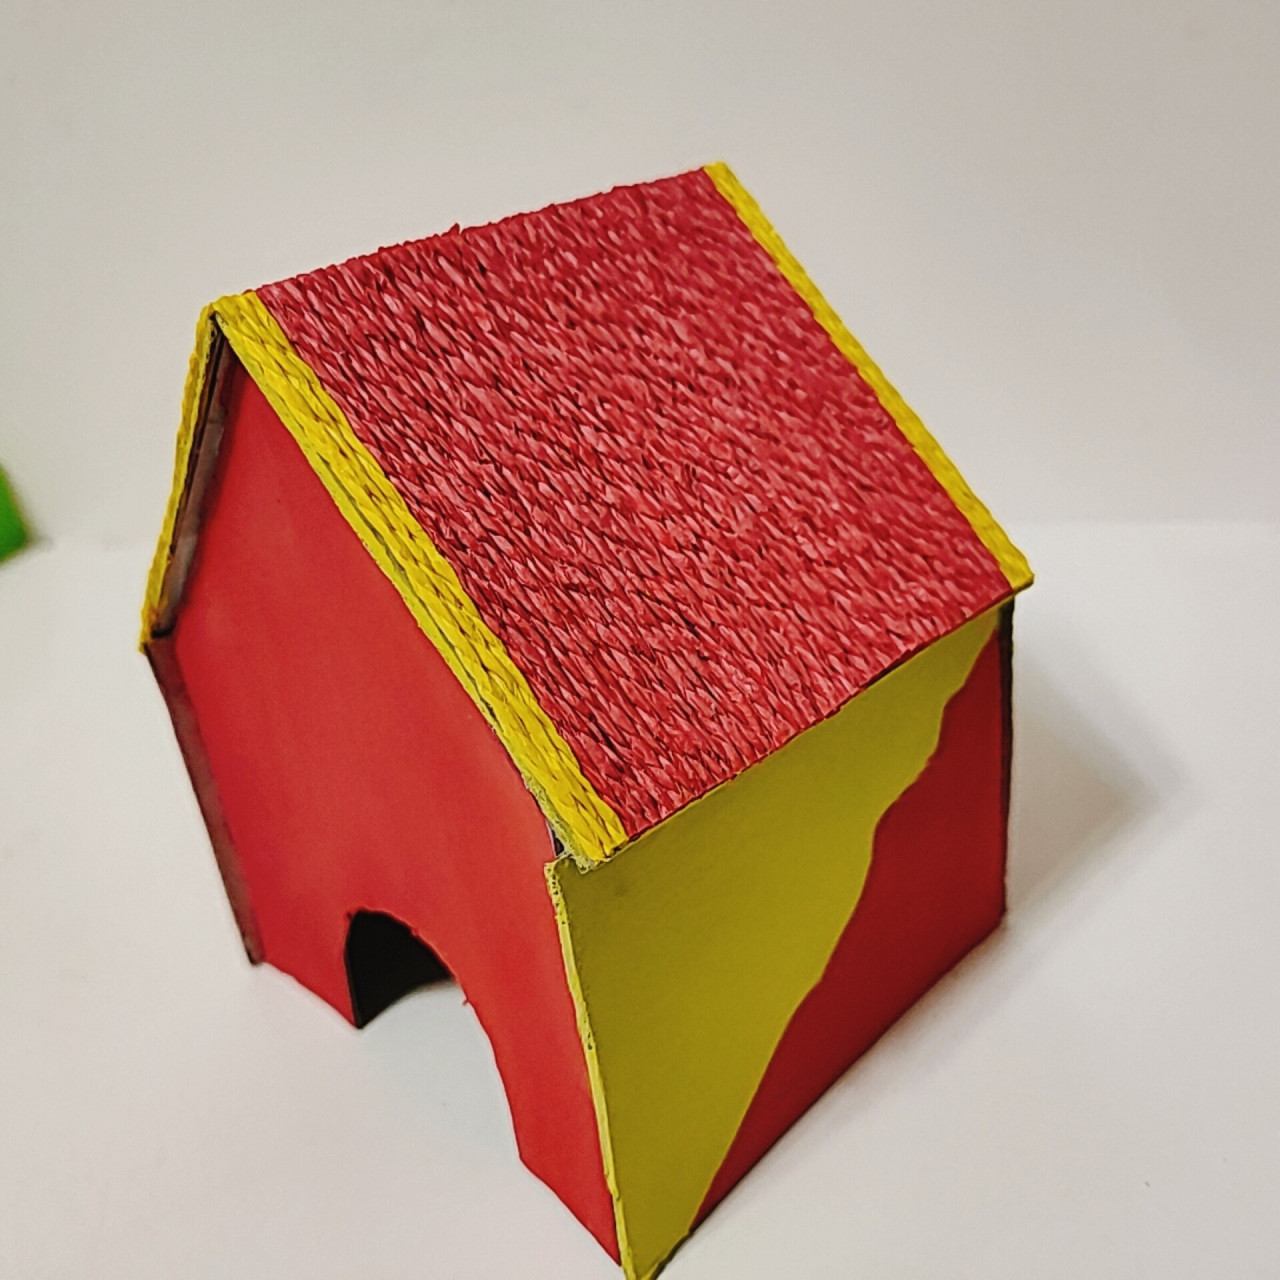 纸板自制仓鼠小房子 上面房顶是用纸线和白乳胶diy的,最大的问题就是